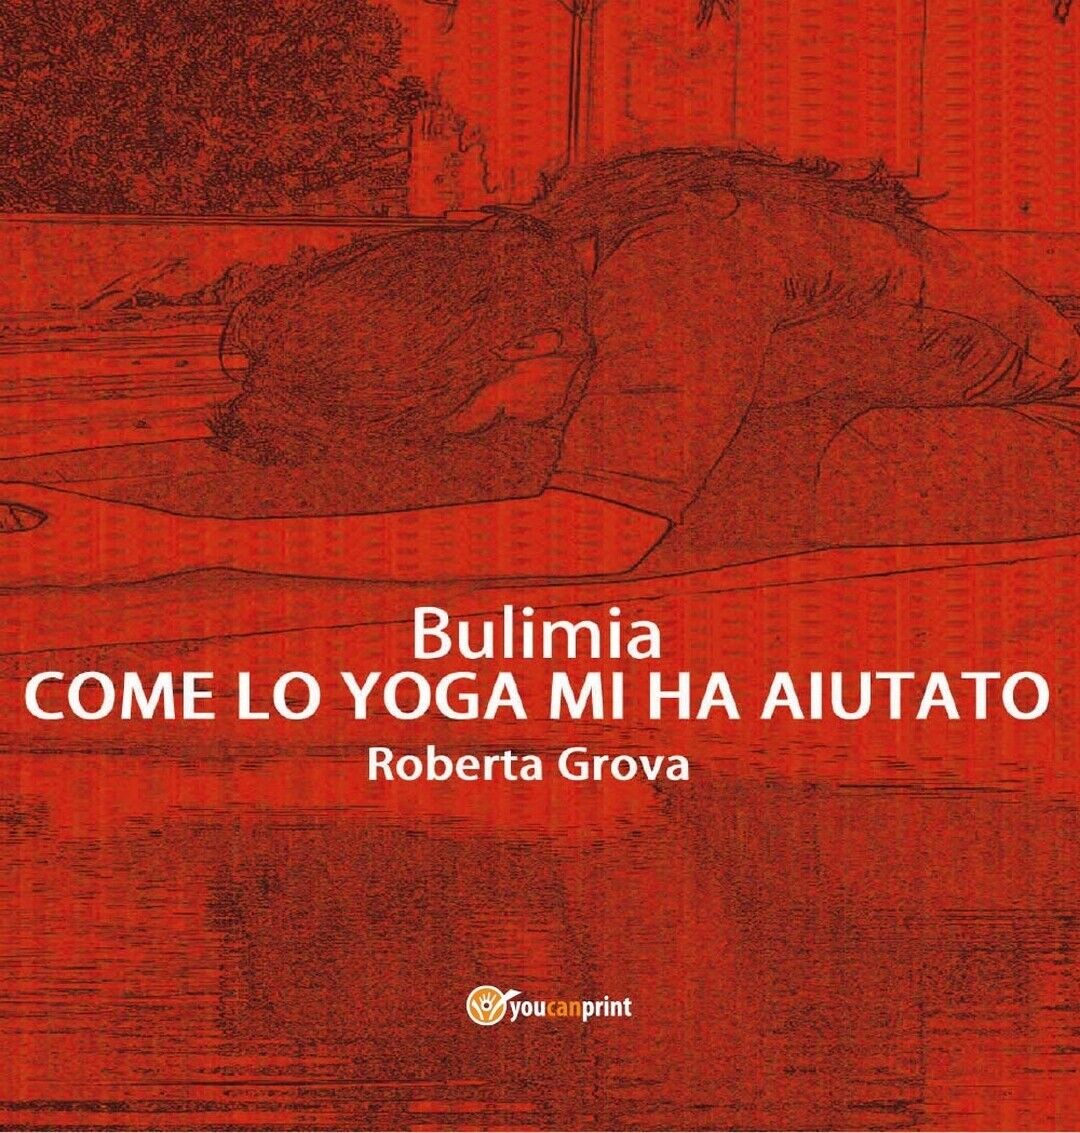 Bulimia - Come lo yoga mi ha aiutato  di Roberta Grova,  2016,  Youcanprint